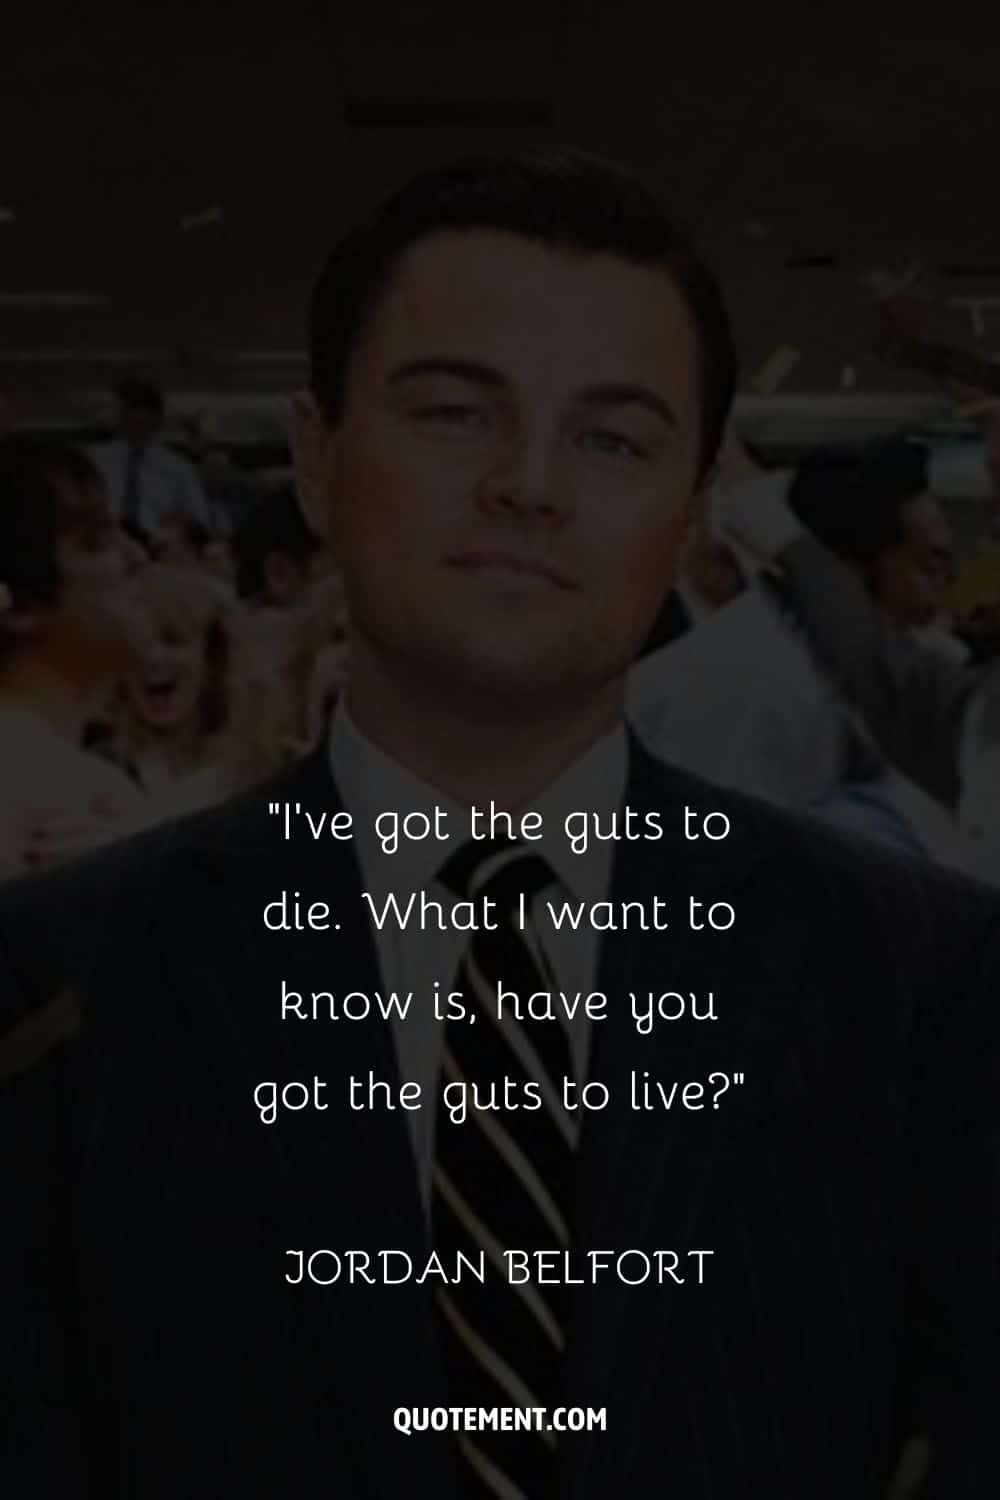 The charismatic Leonardo DiCaprio representing jordan belfort quote
